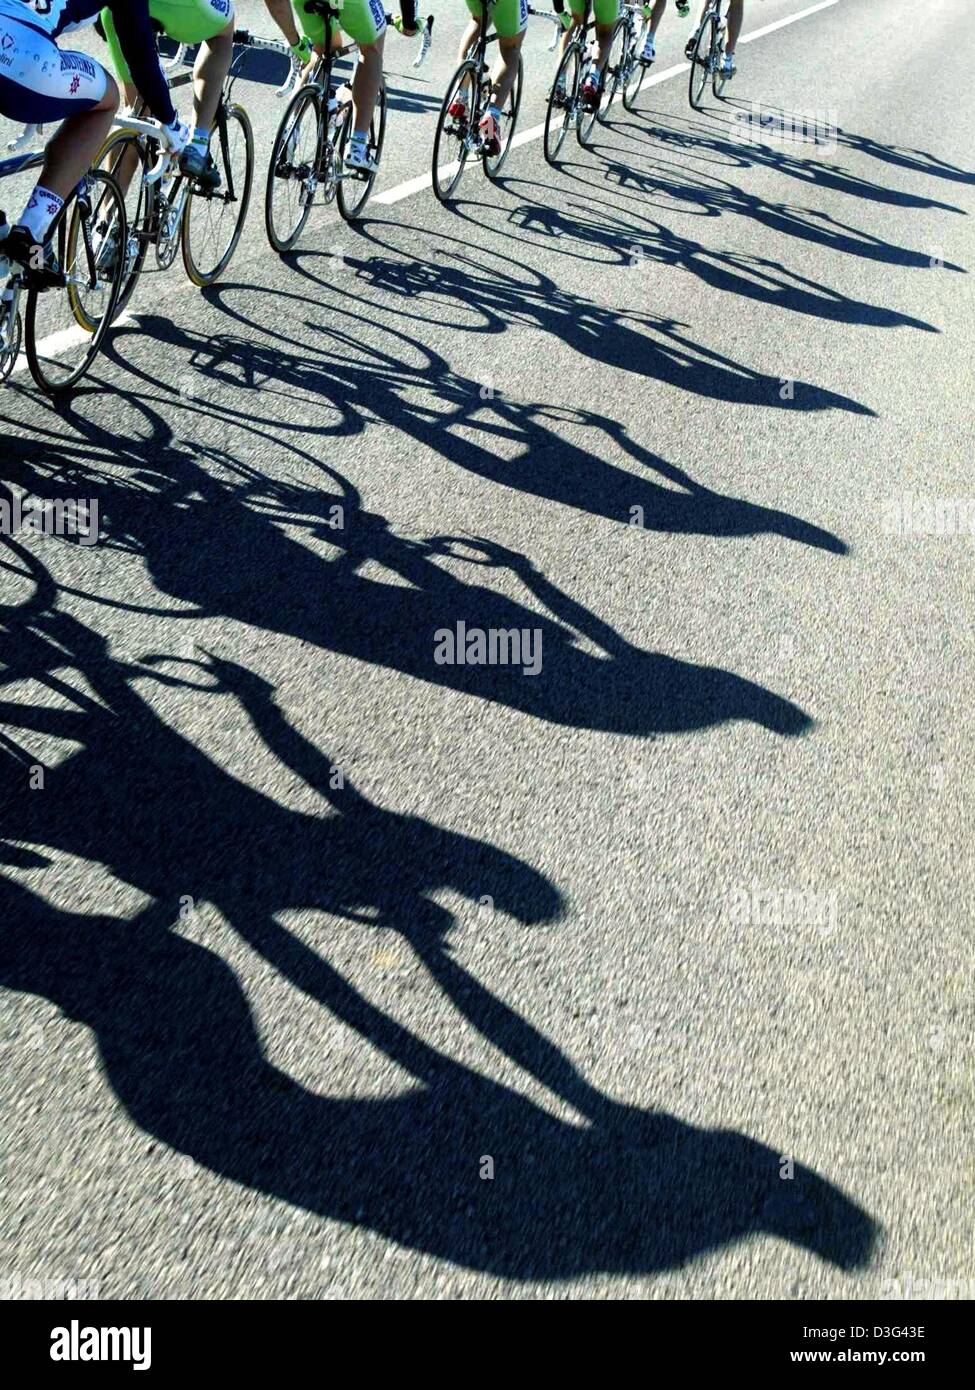 (Afp) - Les grandes ombres de cyclistes sont exprimés sur l'asphalte d'une route en Cala Ratjada, Espagne, le 3 février 2003. Banque D'Images